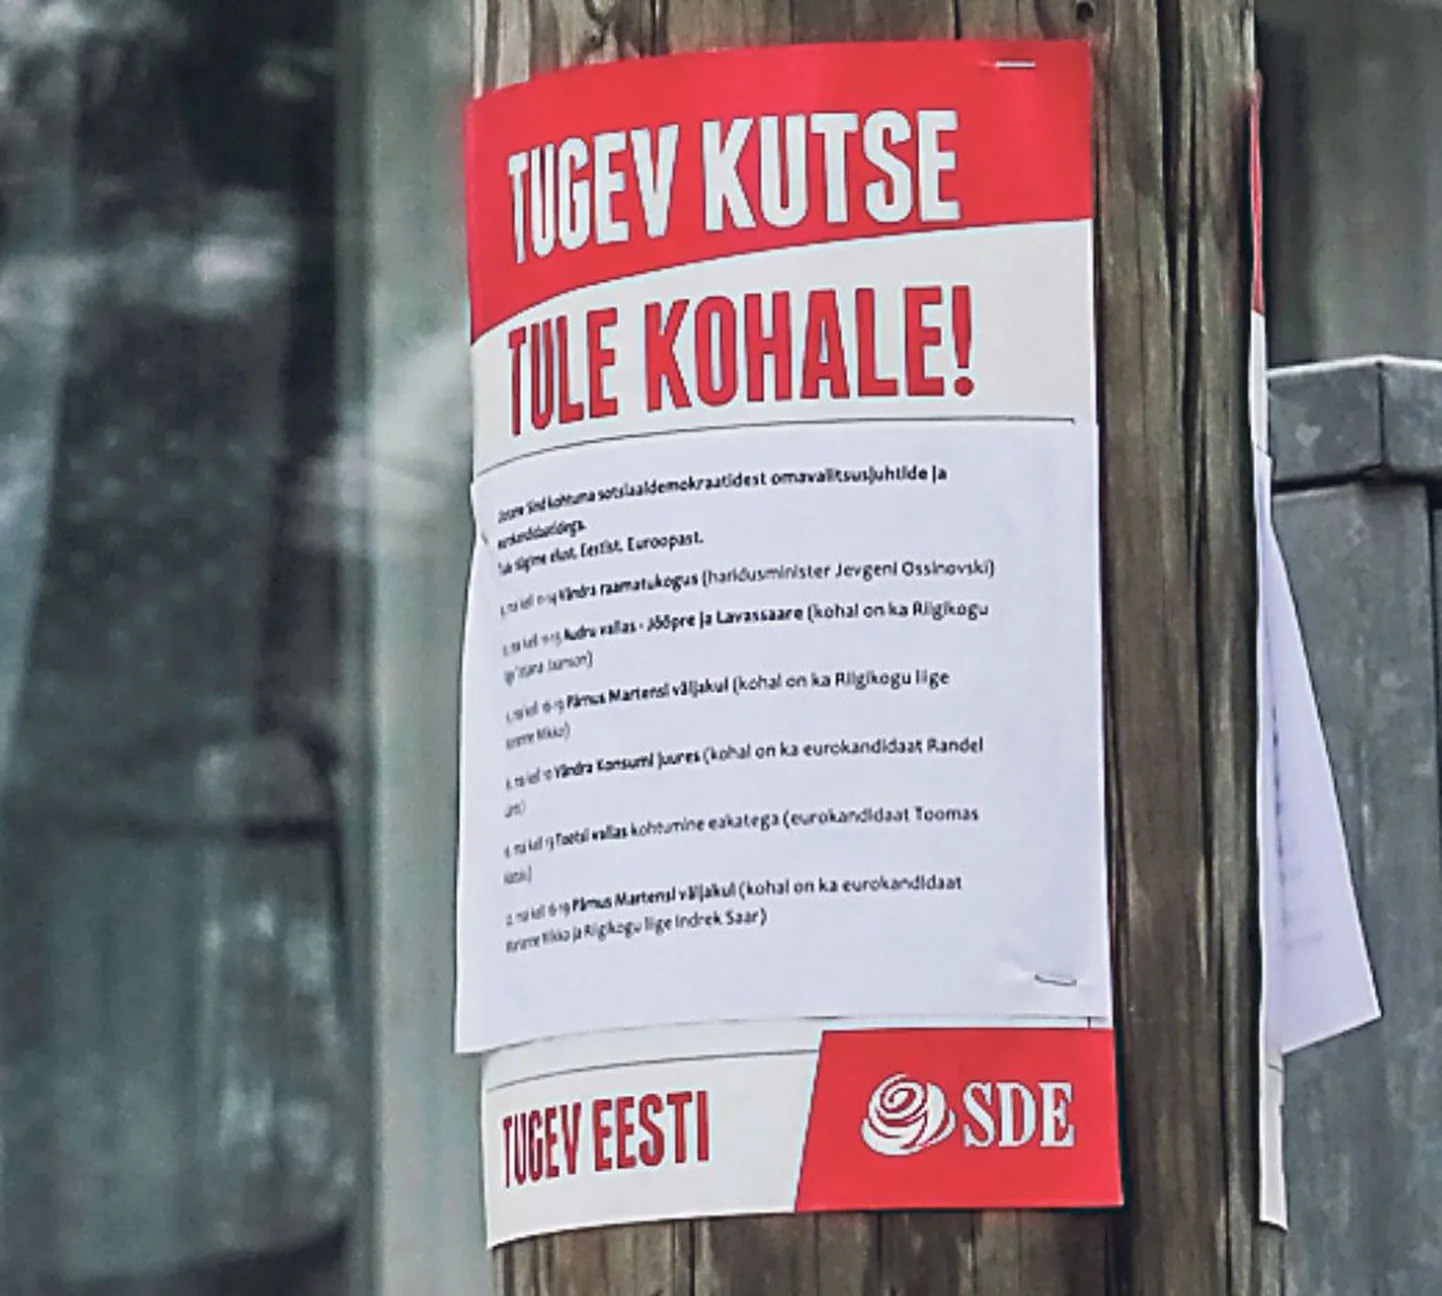 Europarlamendi valimised toimusid 25. mail, aga sotsid kutsuvad Pärnu tänavail veel praegugi oma ammustele valimisüritustele.